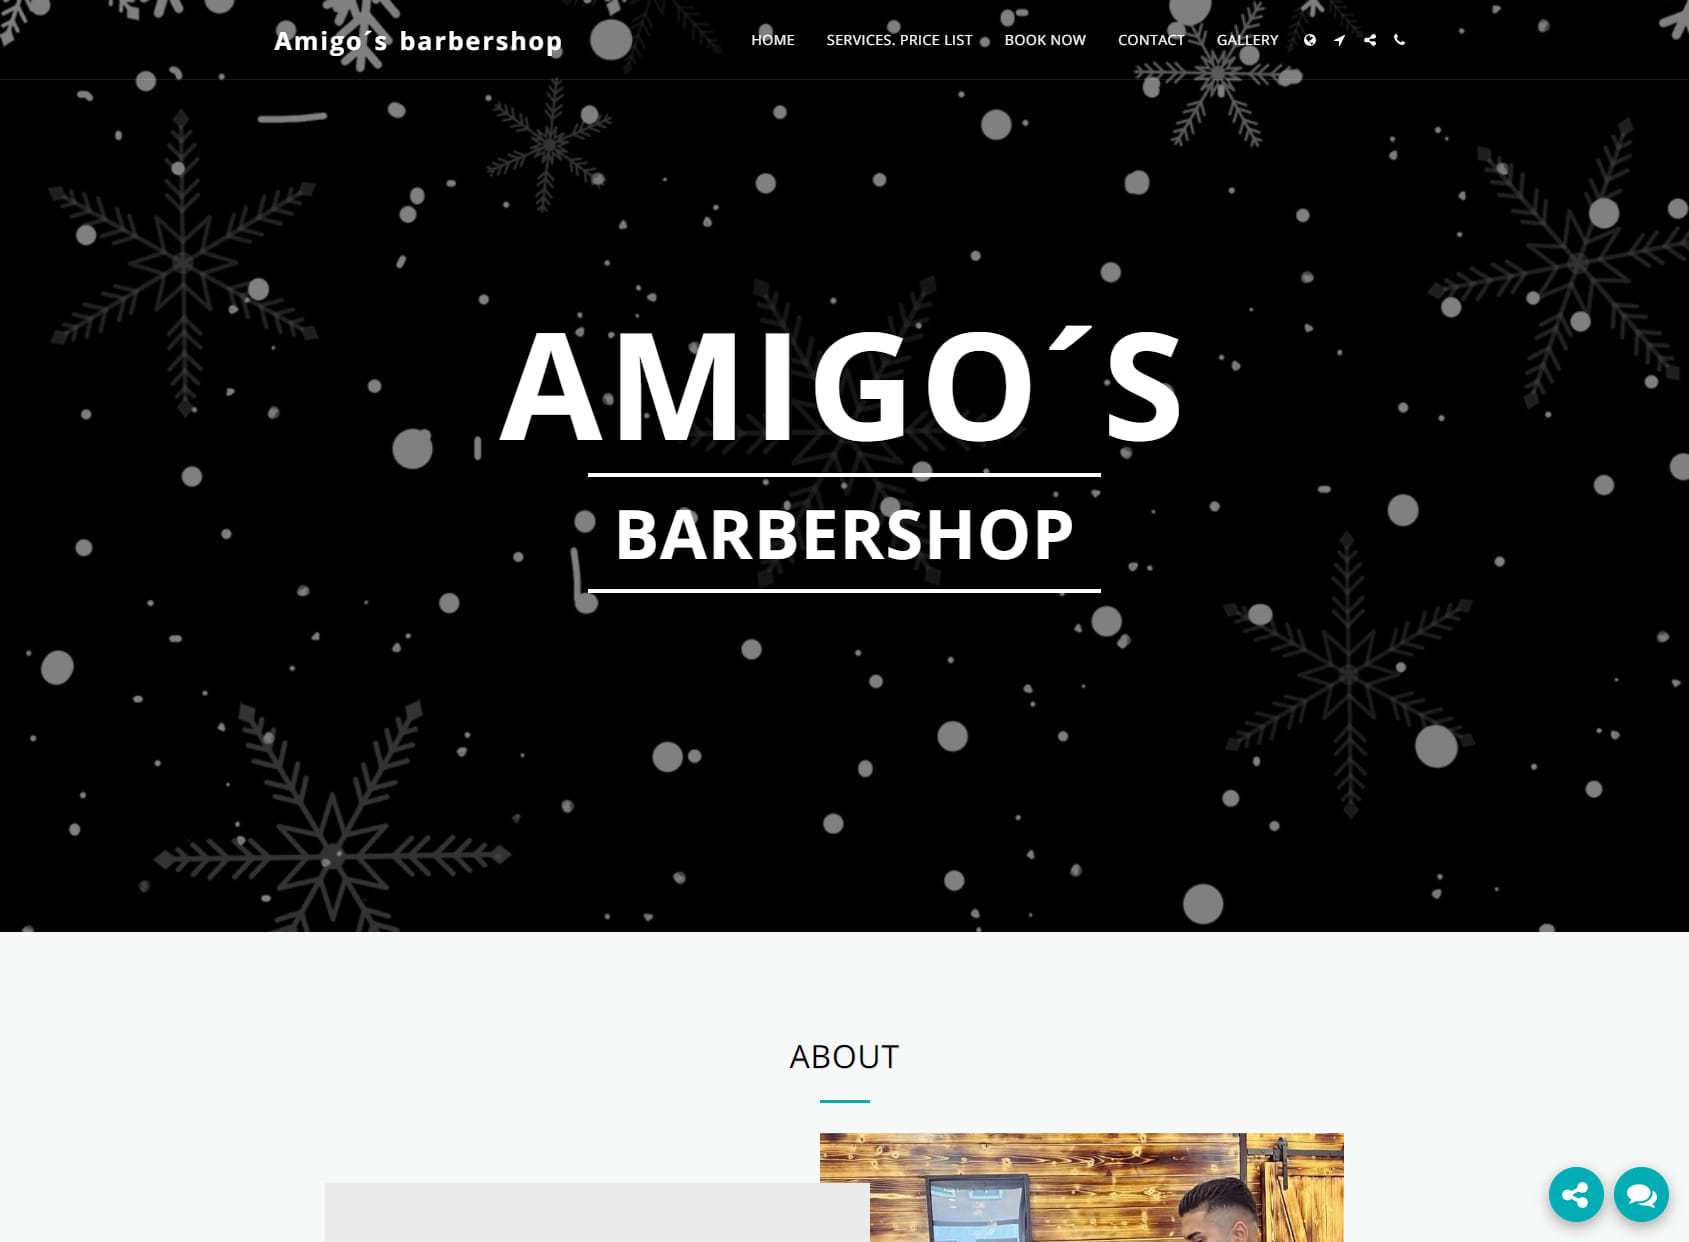 amigo's barbaershop